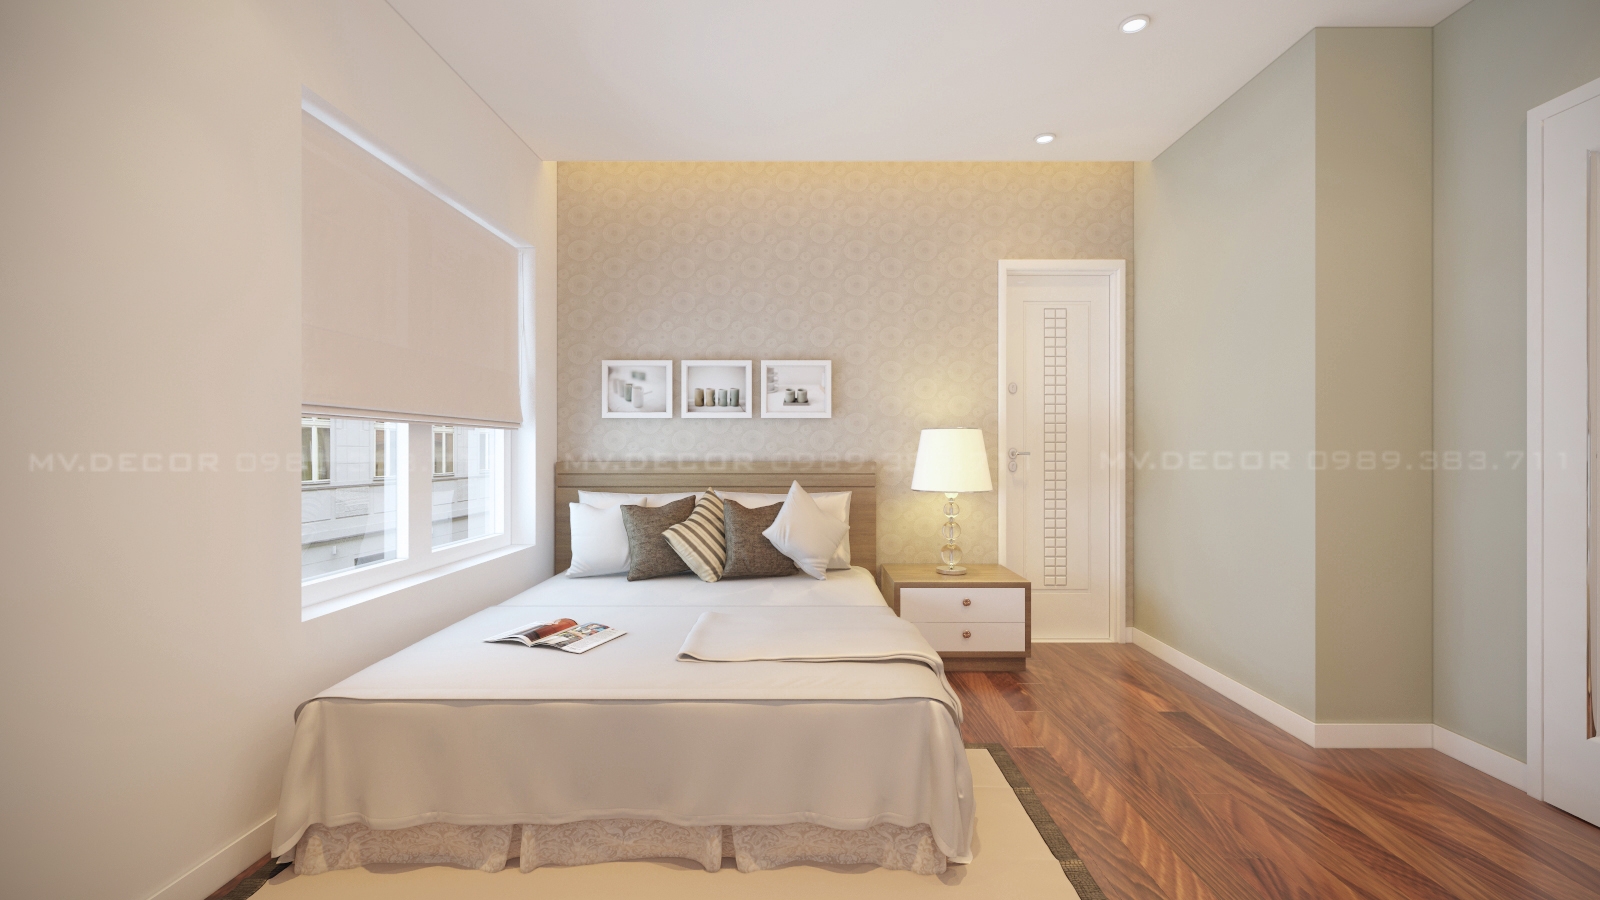 thiết kế nội thất chung cư tại Hà Nội chung cư westa 8 1550070551